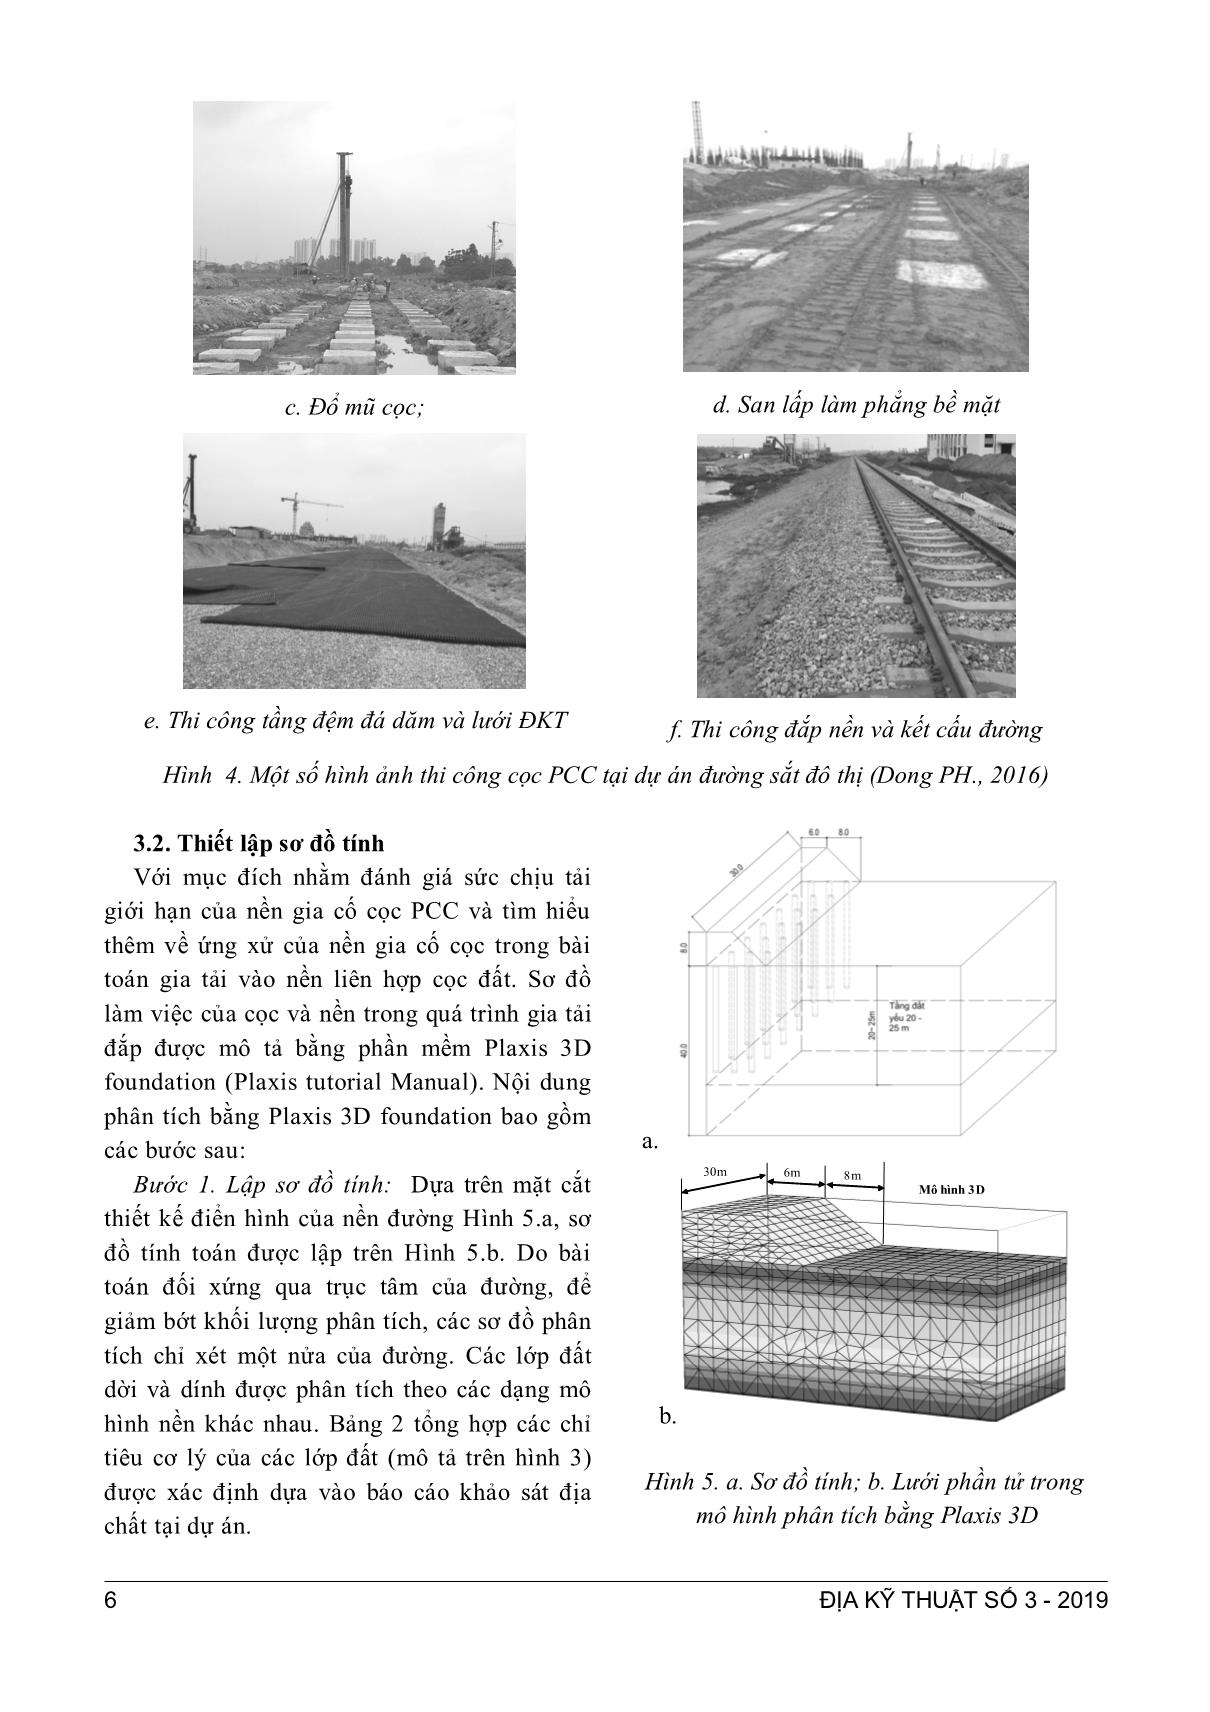 Nghiên cứu ứng xử của cọc ống bê tông gia cố nền đất yếu dưới nền đường đắp bằng phân tích phương trình hóa học trang 4